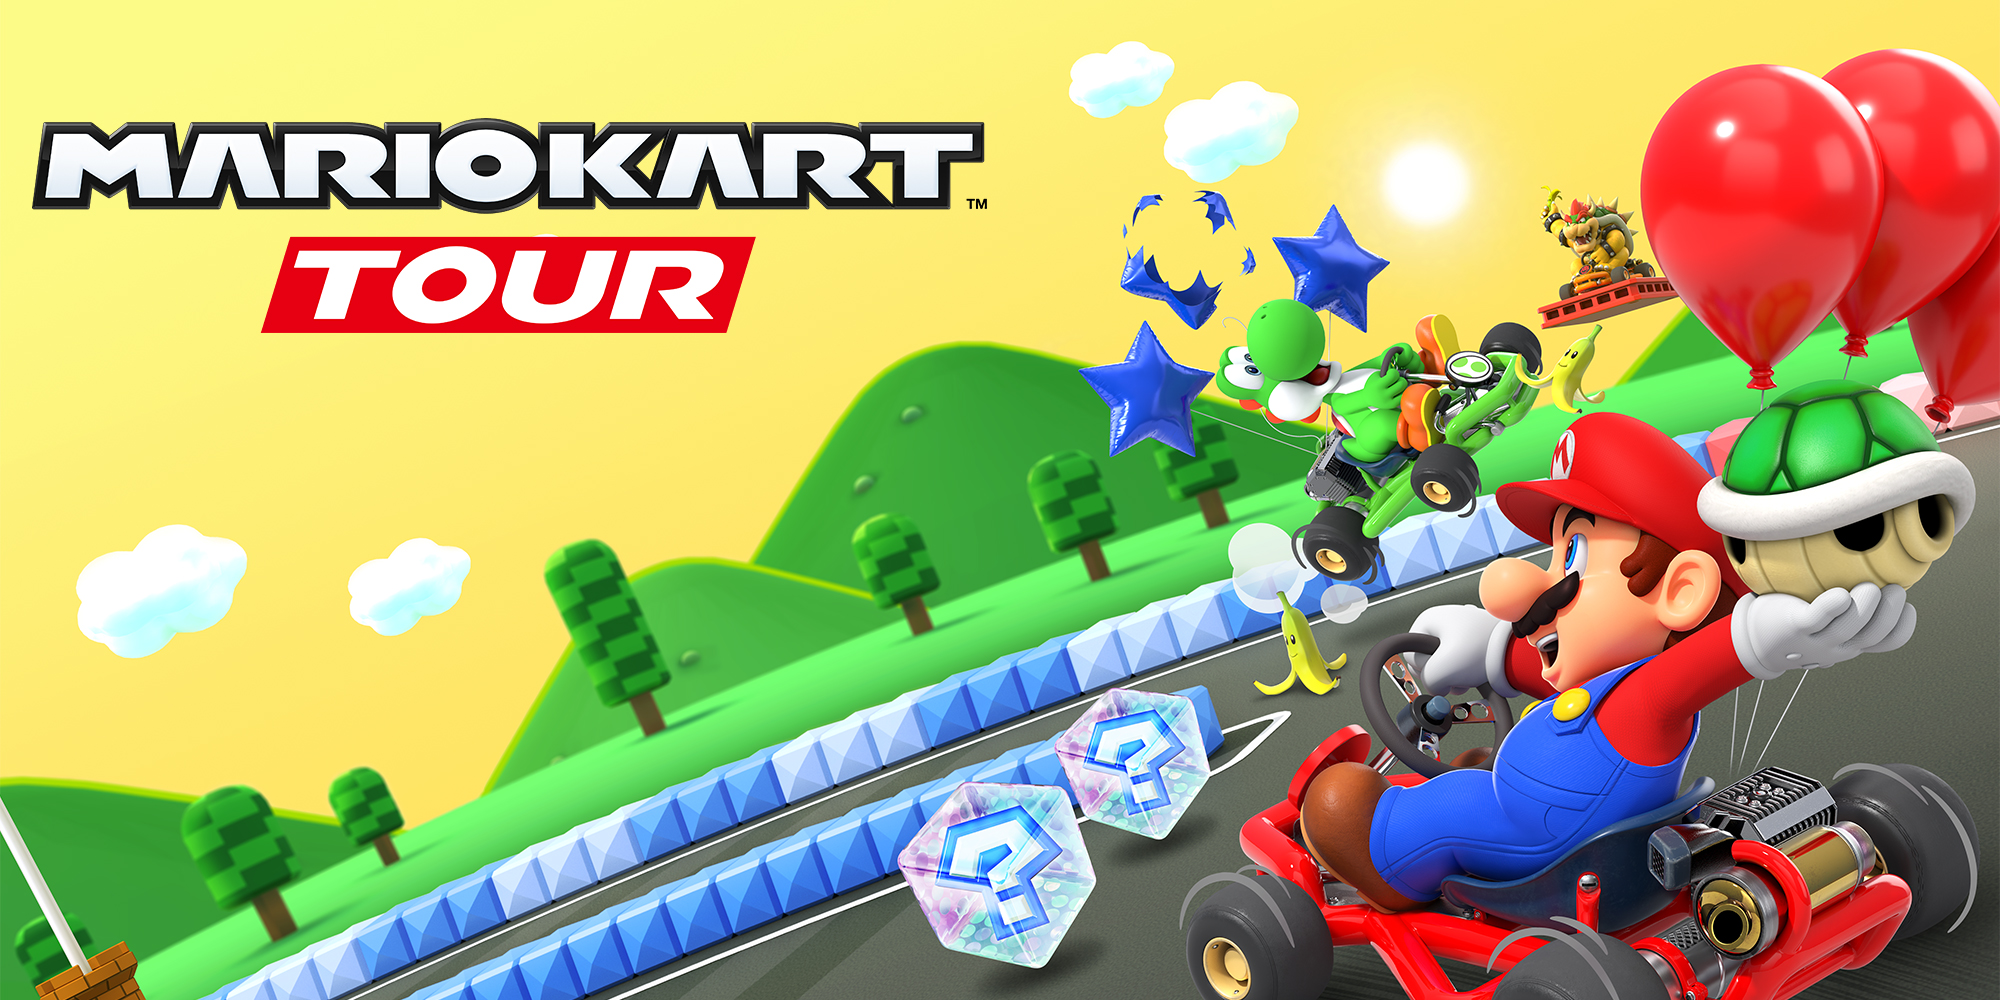 Gordels om voor Mario Kart Tour op 25 september!